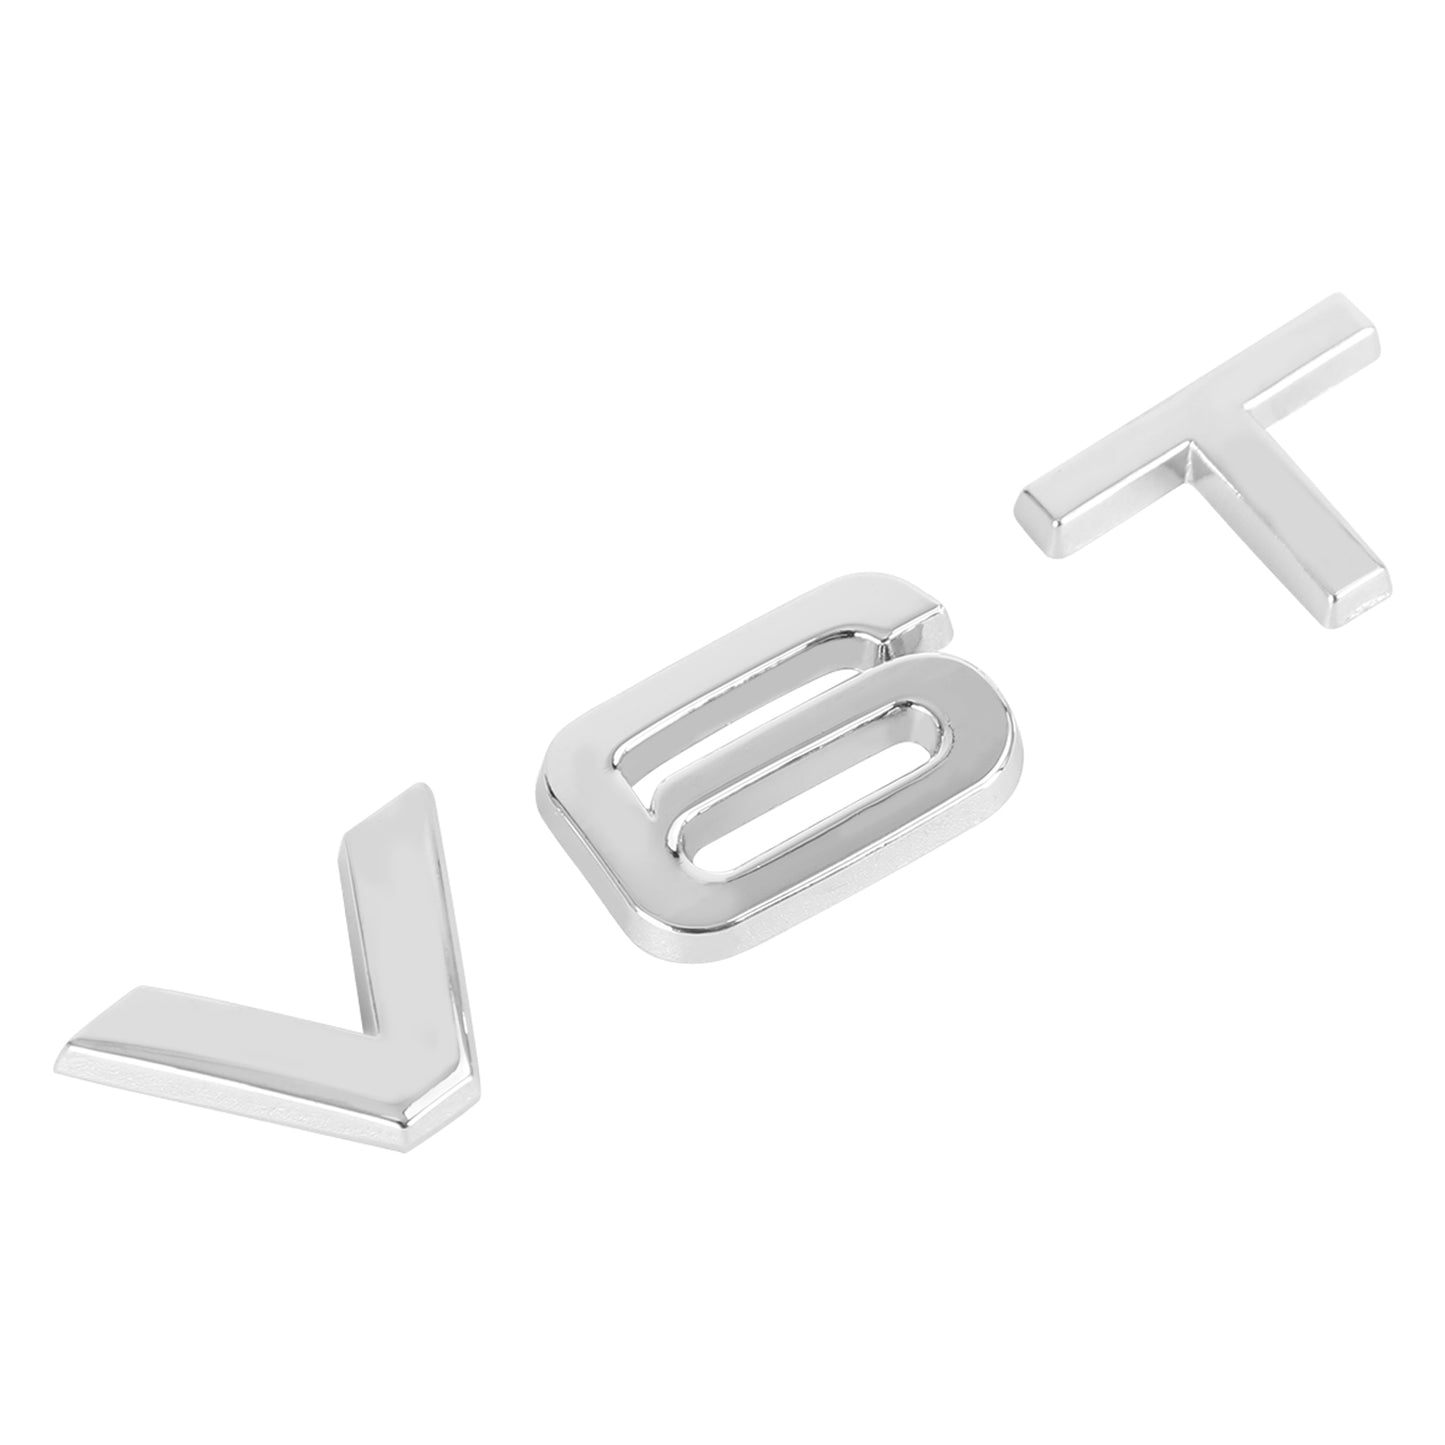 V6T Emblem Badge Fit For AUDI A1 A3 A4 A5 A6 A7 Q3 Q5 Q7 S6 S7 S8 S4 SQ5 Chrome